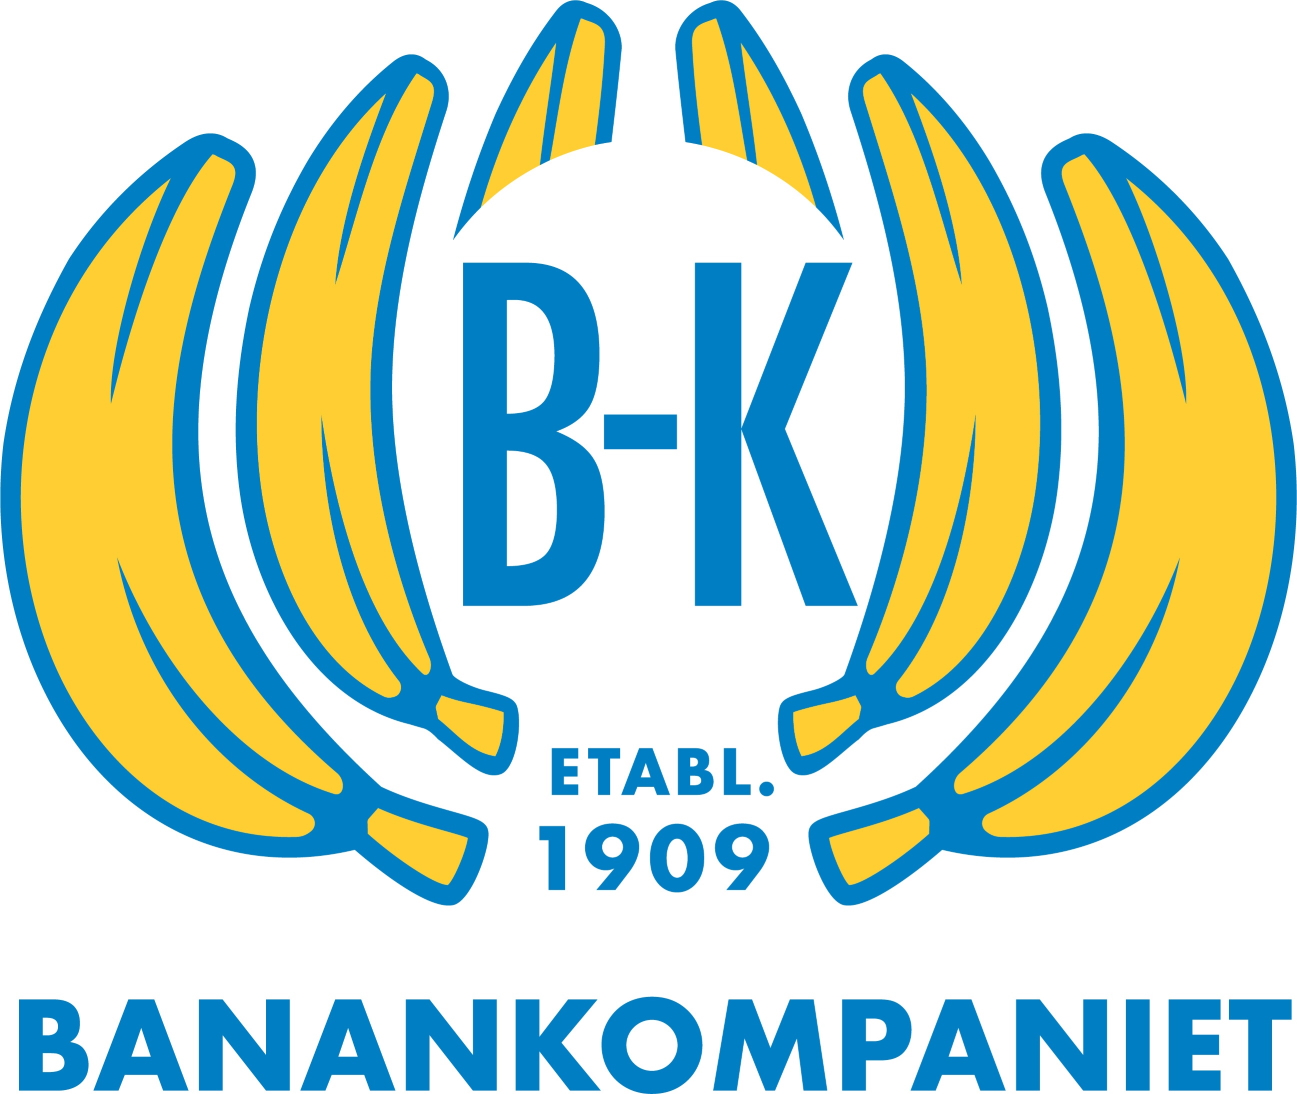 B-K BANANKOMPANIET ETABL. 1909